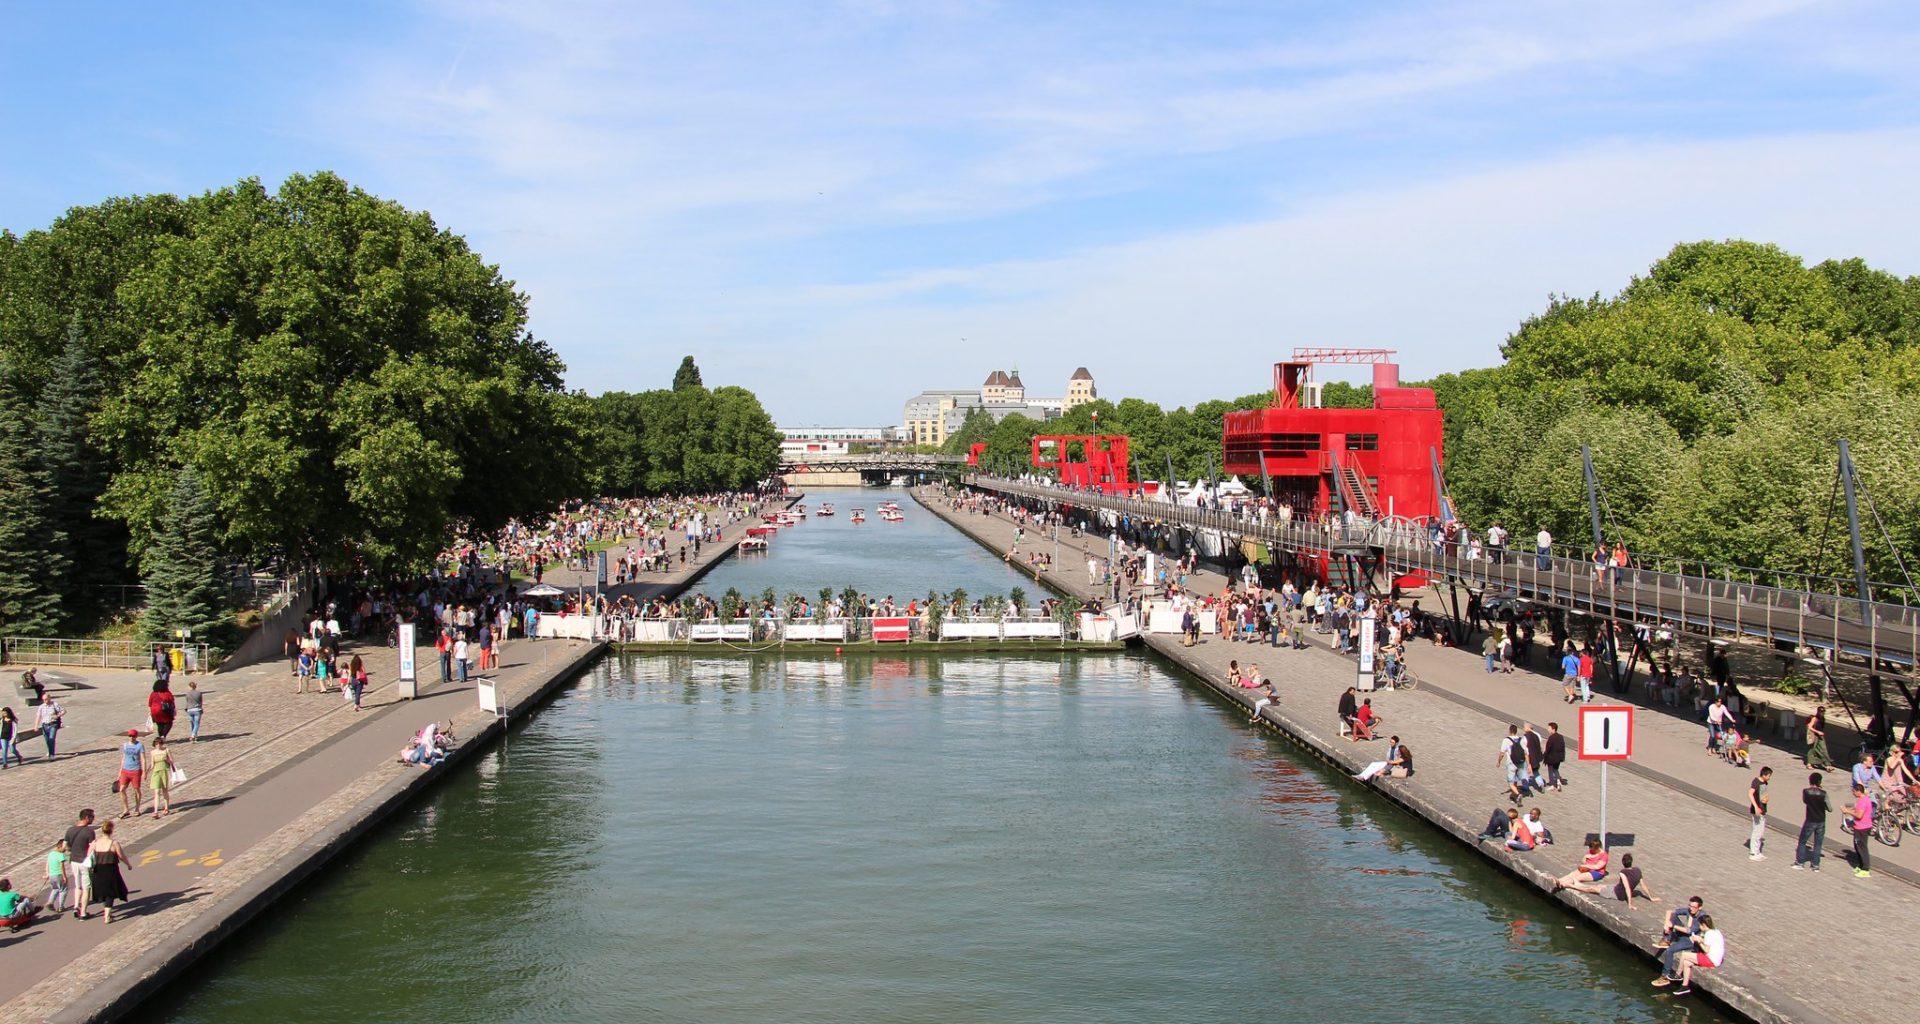 villette-canal-ourcq-paris-zigzag